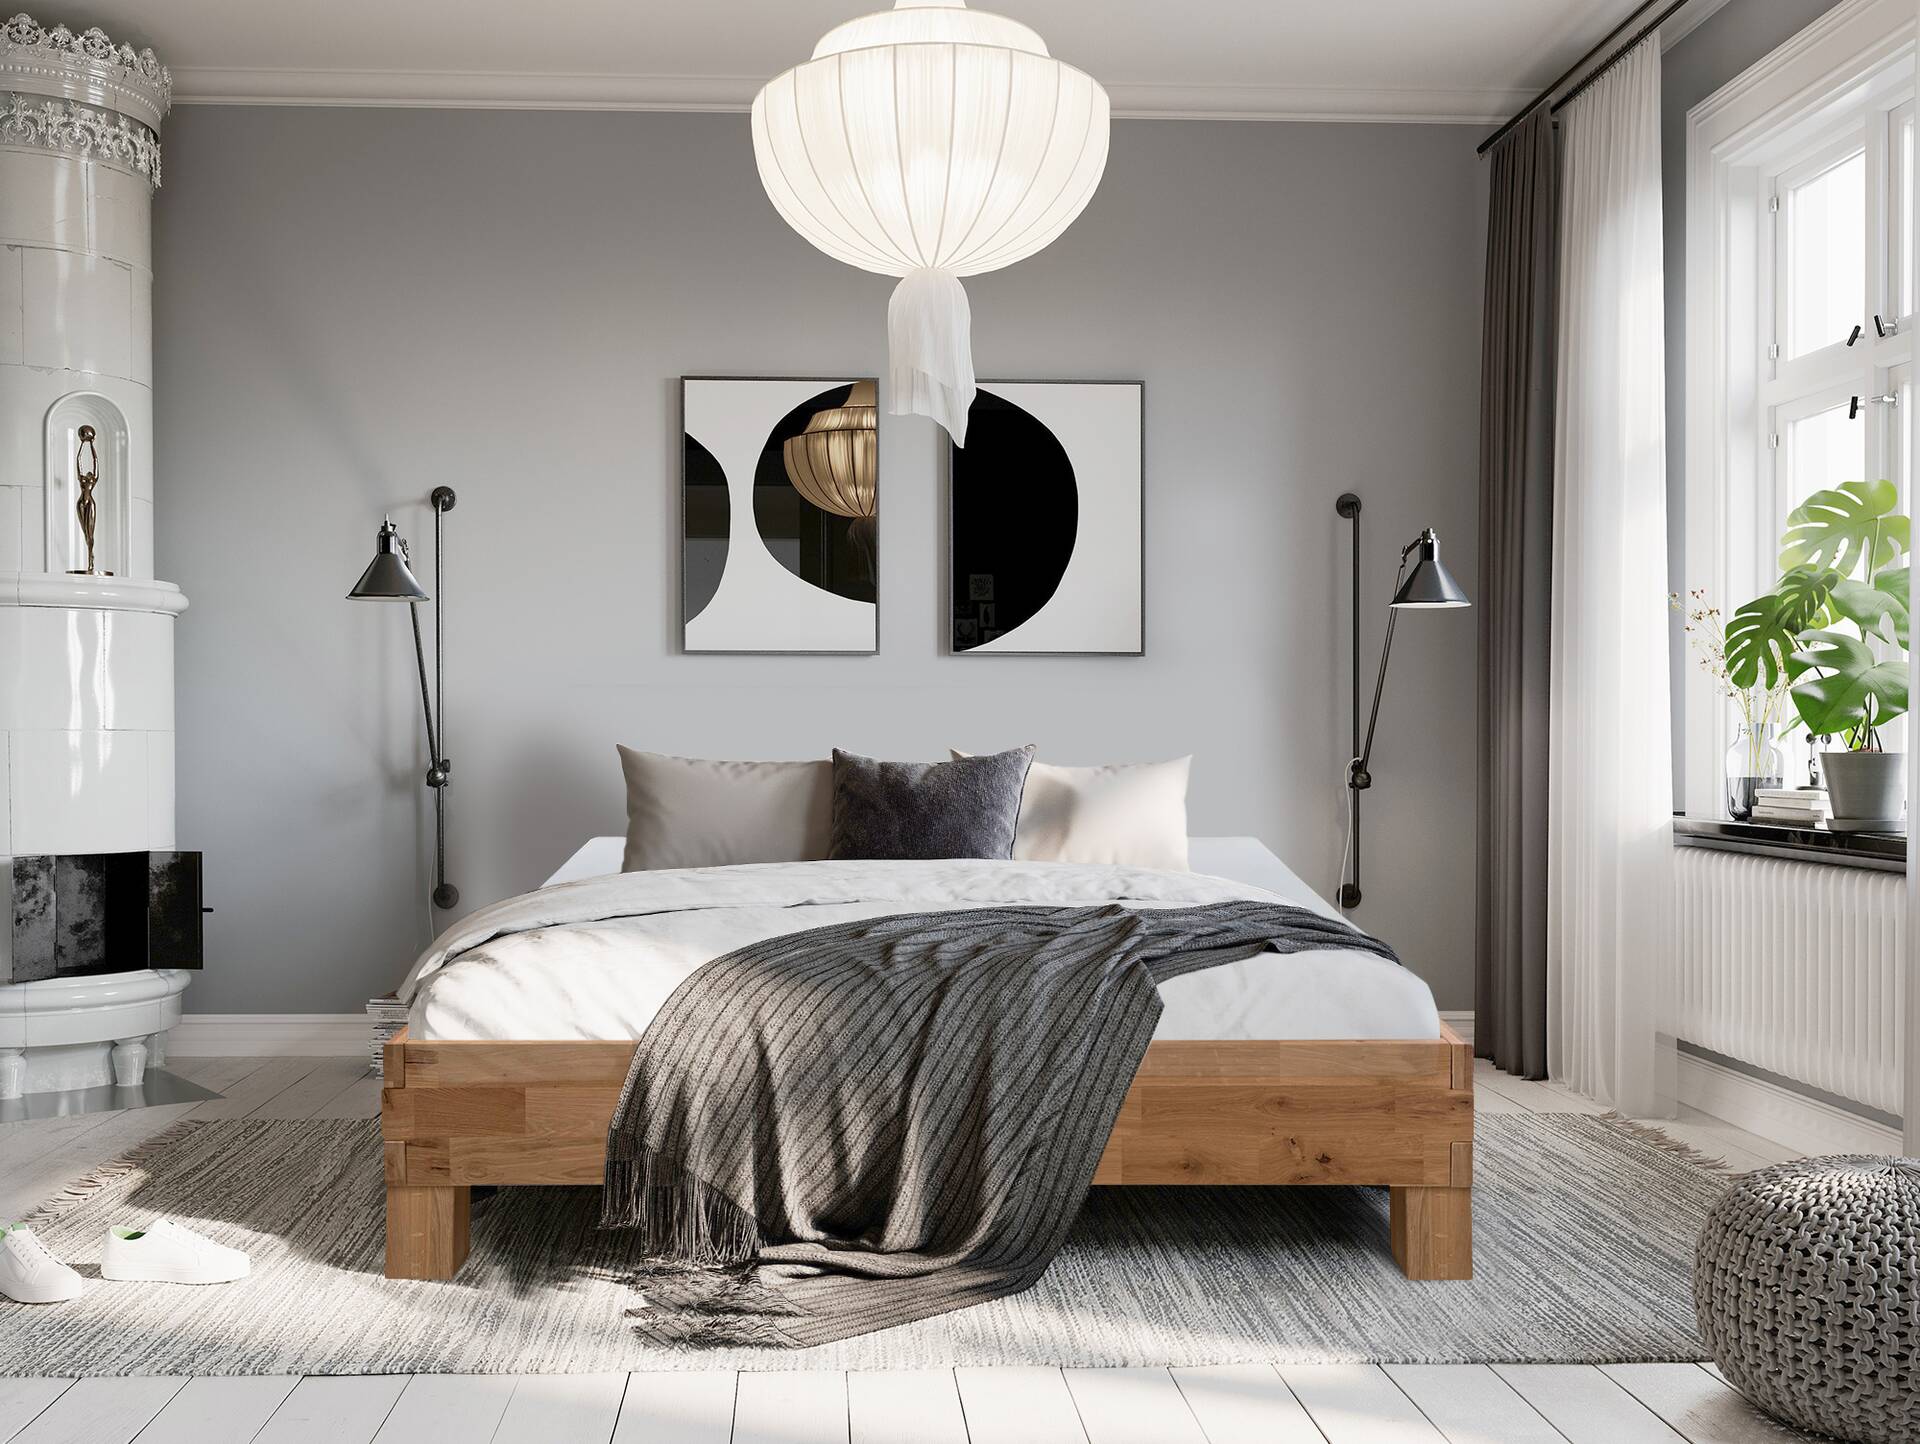 CORDINO 4-Fuß-Bett aus Eiche, Material Massivholz, mit/ohne Kopfteil 140 x 220 cm | Eiche unbehandelt | gehackt | ohne Kopfteil